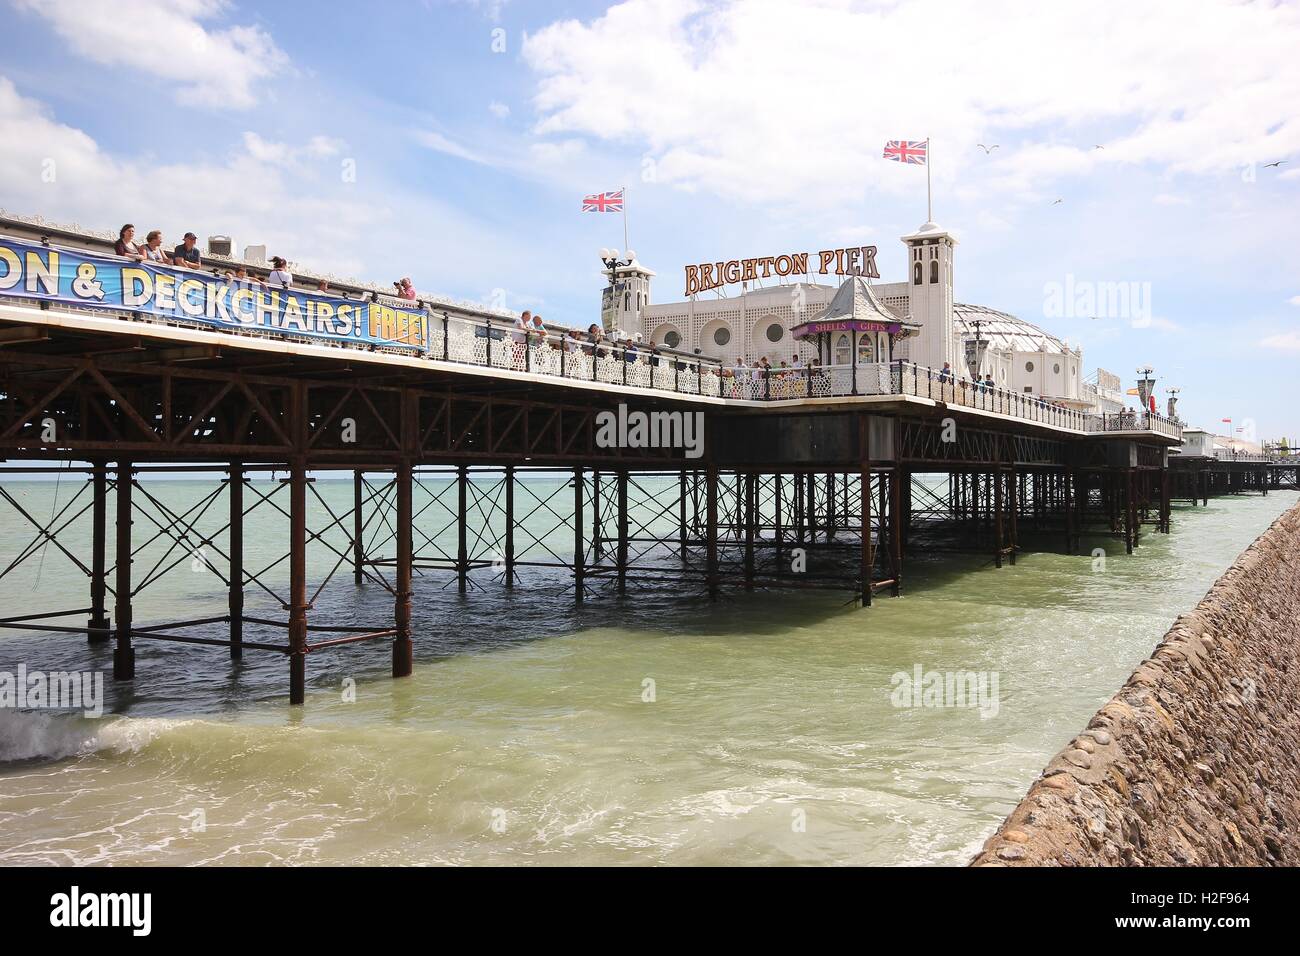 Die berühmte Brighton Pier an einem schönen sonnigen Tag, England, Meer, Sommer, touristische Attraktion von Brighton, Vergnügungen Zentrum Stockfoto